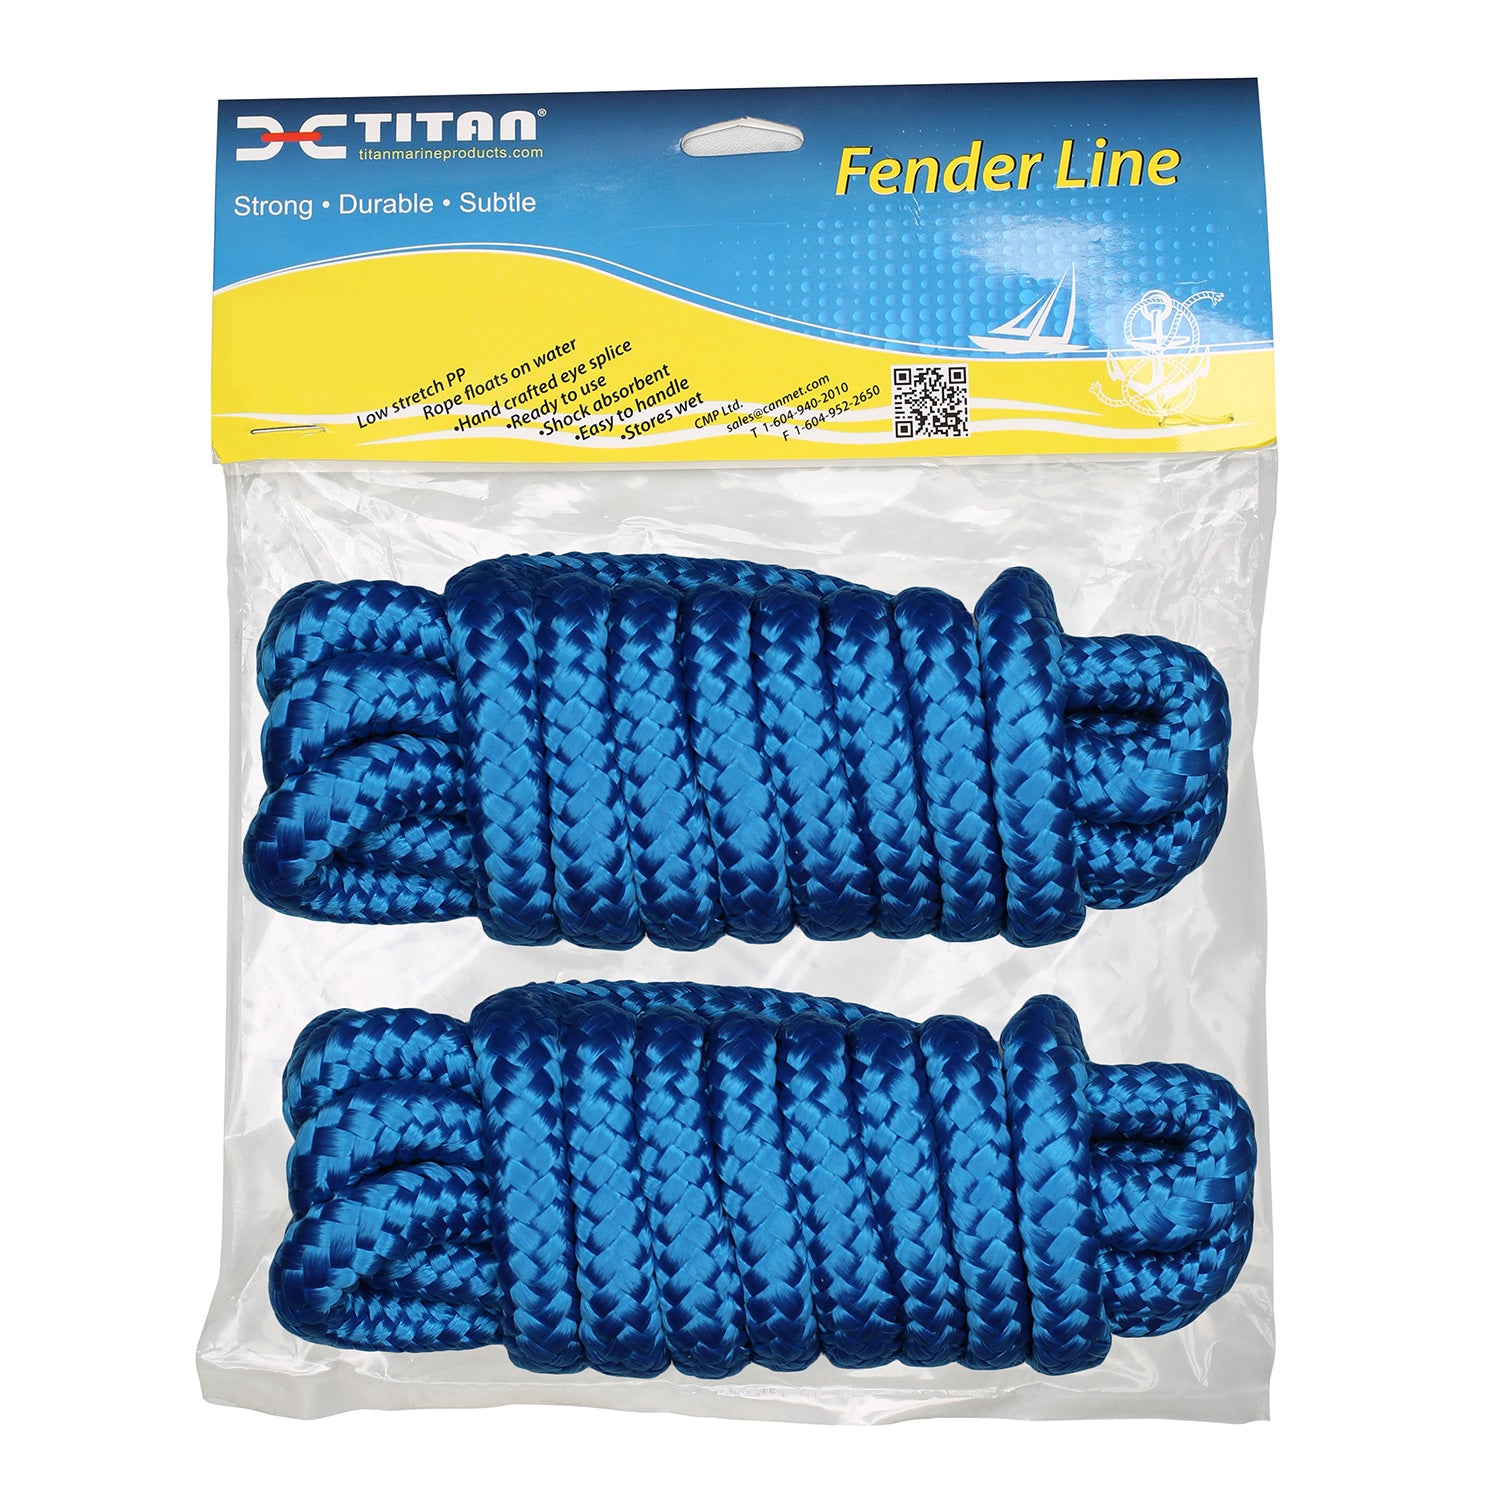 Titan 5/16in-6ft 3-strand Fender Line - Blue, 2pcs